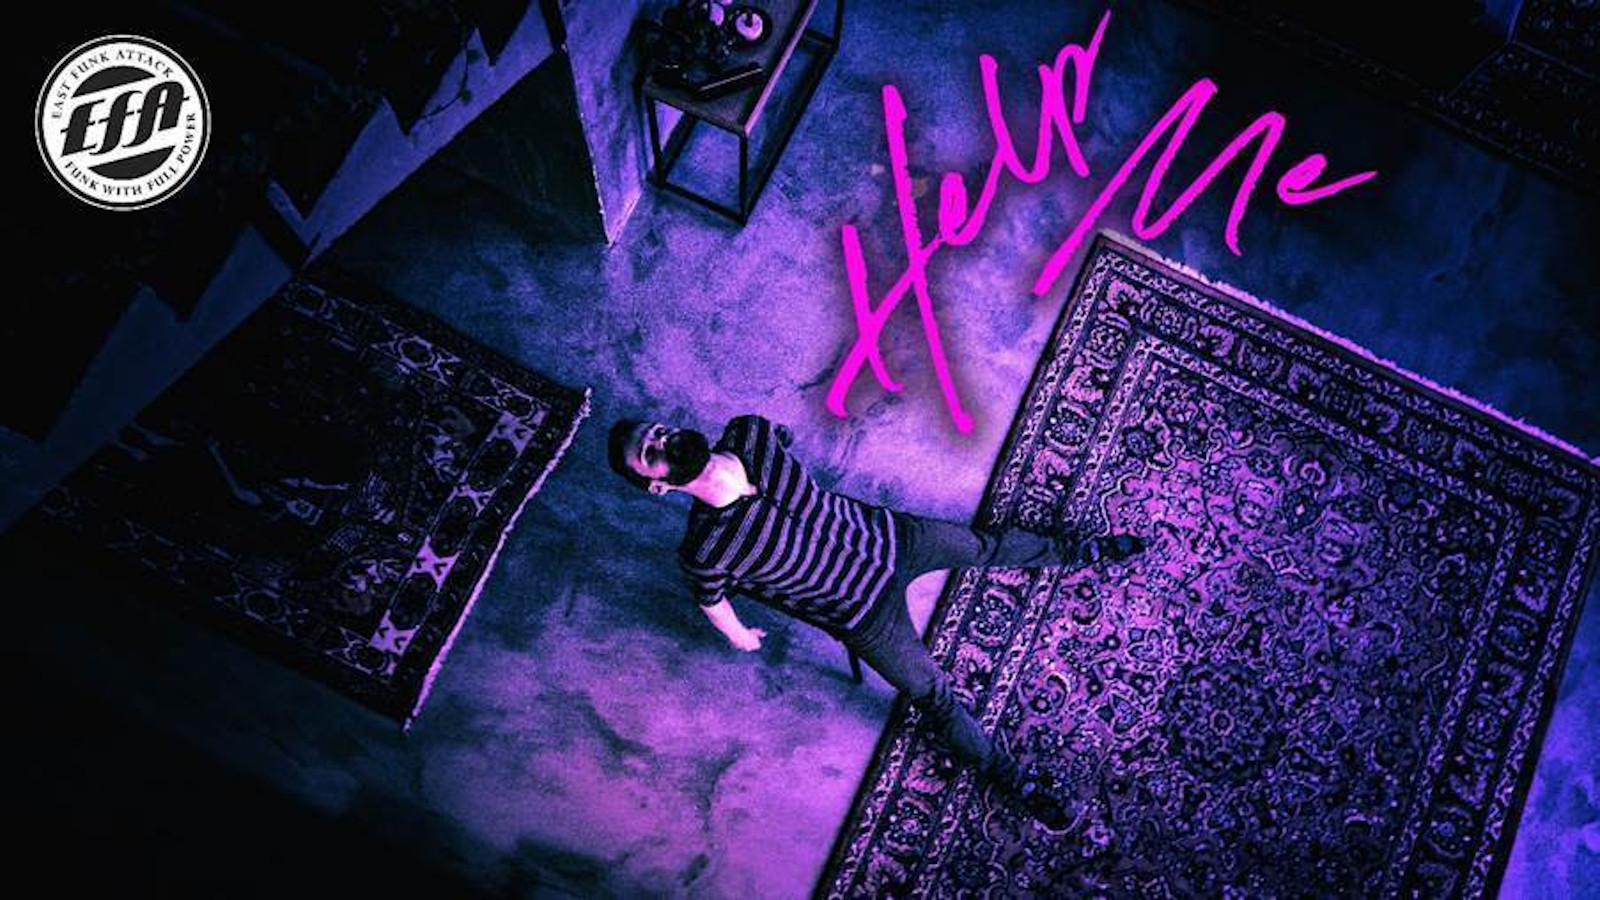 Kuvassa on violetin sävytys ja siinä on kuvattu ylhäältä päin lattia mattoineen ja laulaja makaamassa lattialla.